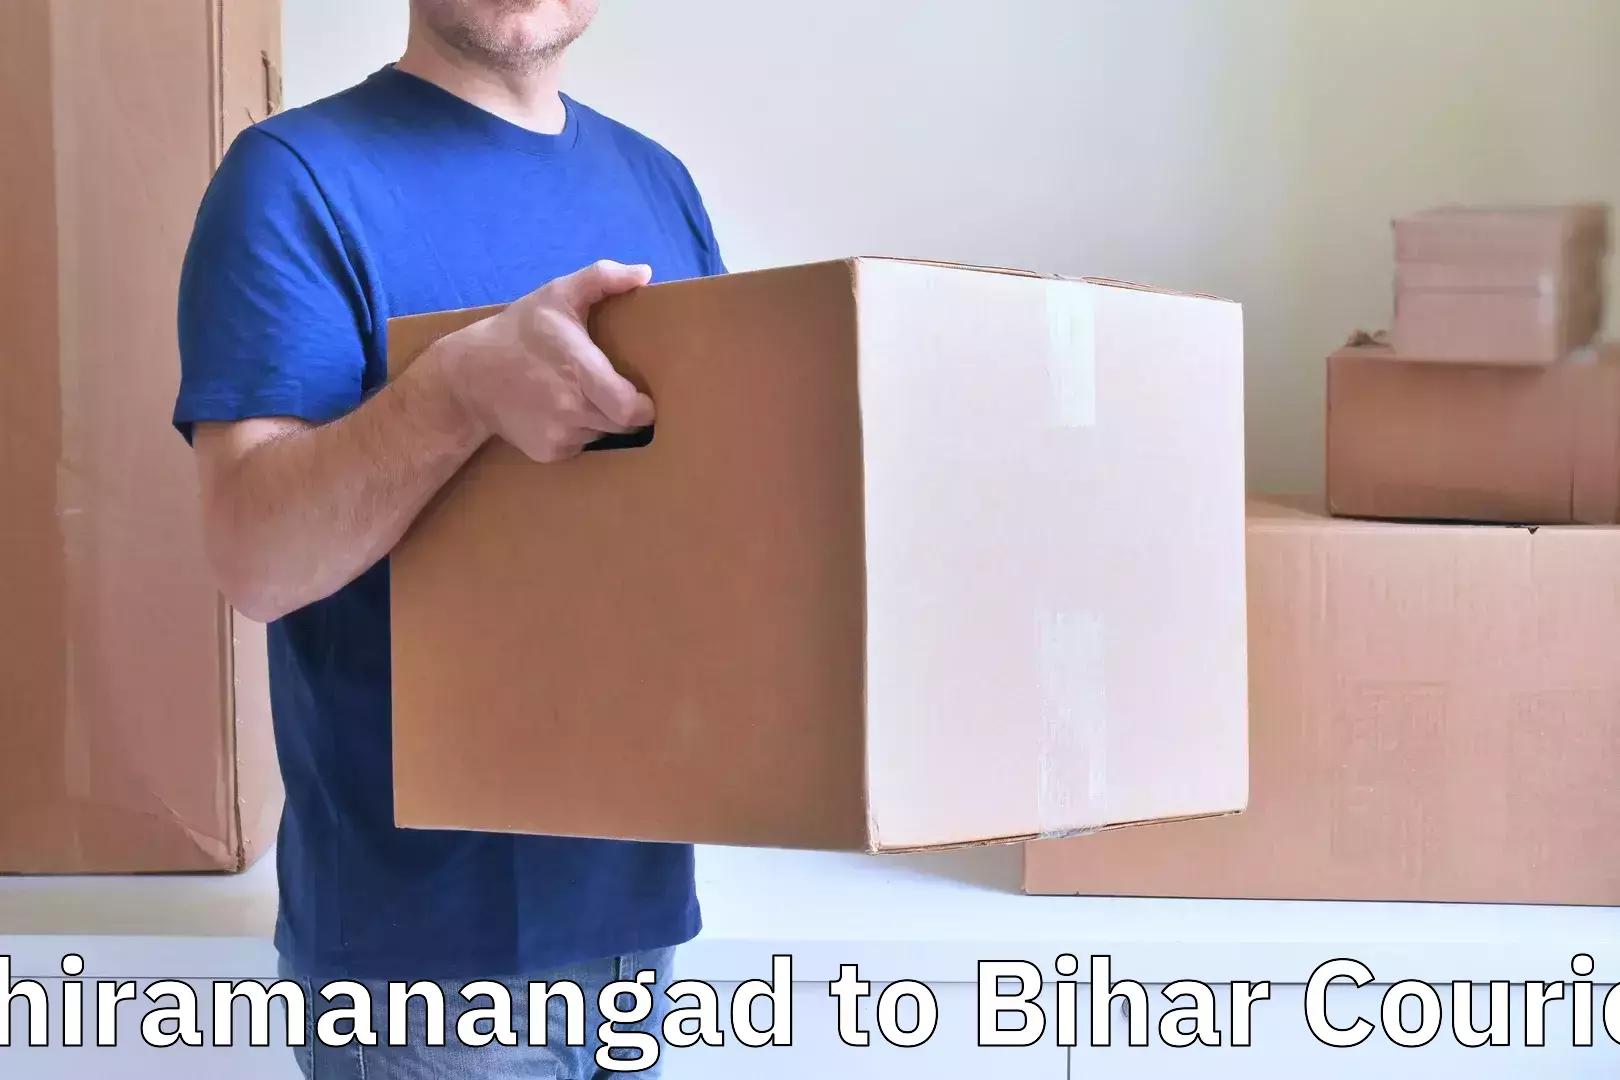 Luggage shipment tracking Chiramanangad to Barhiya